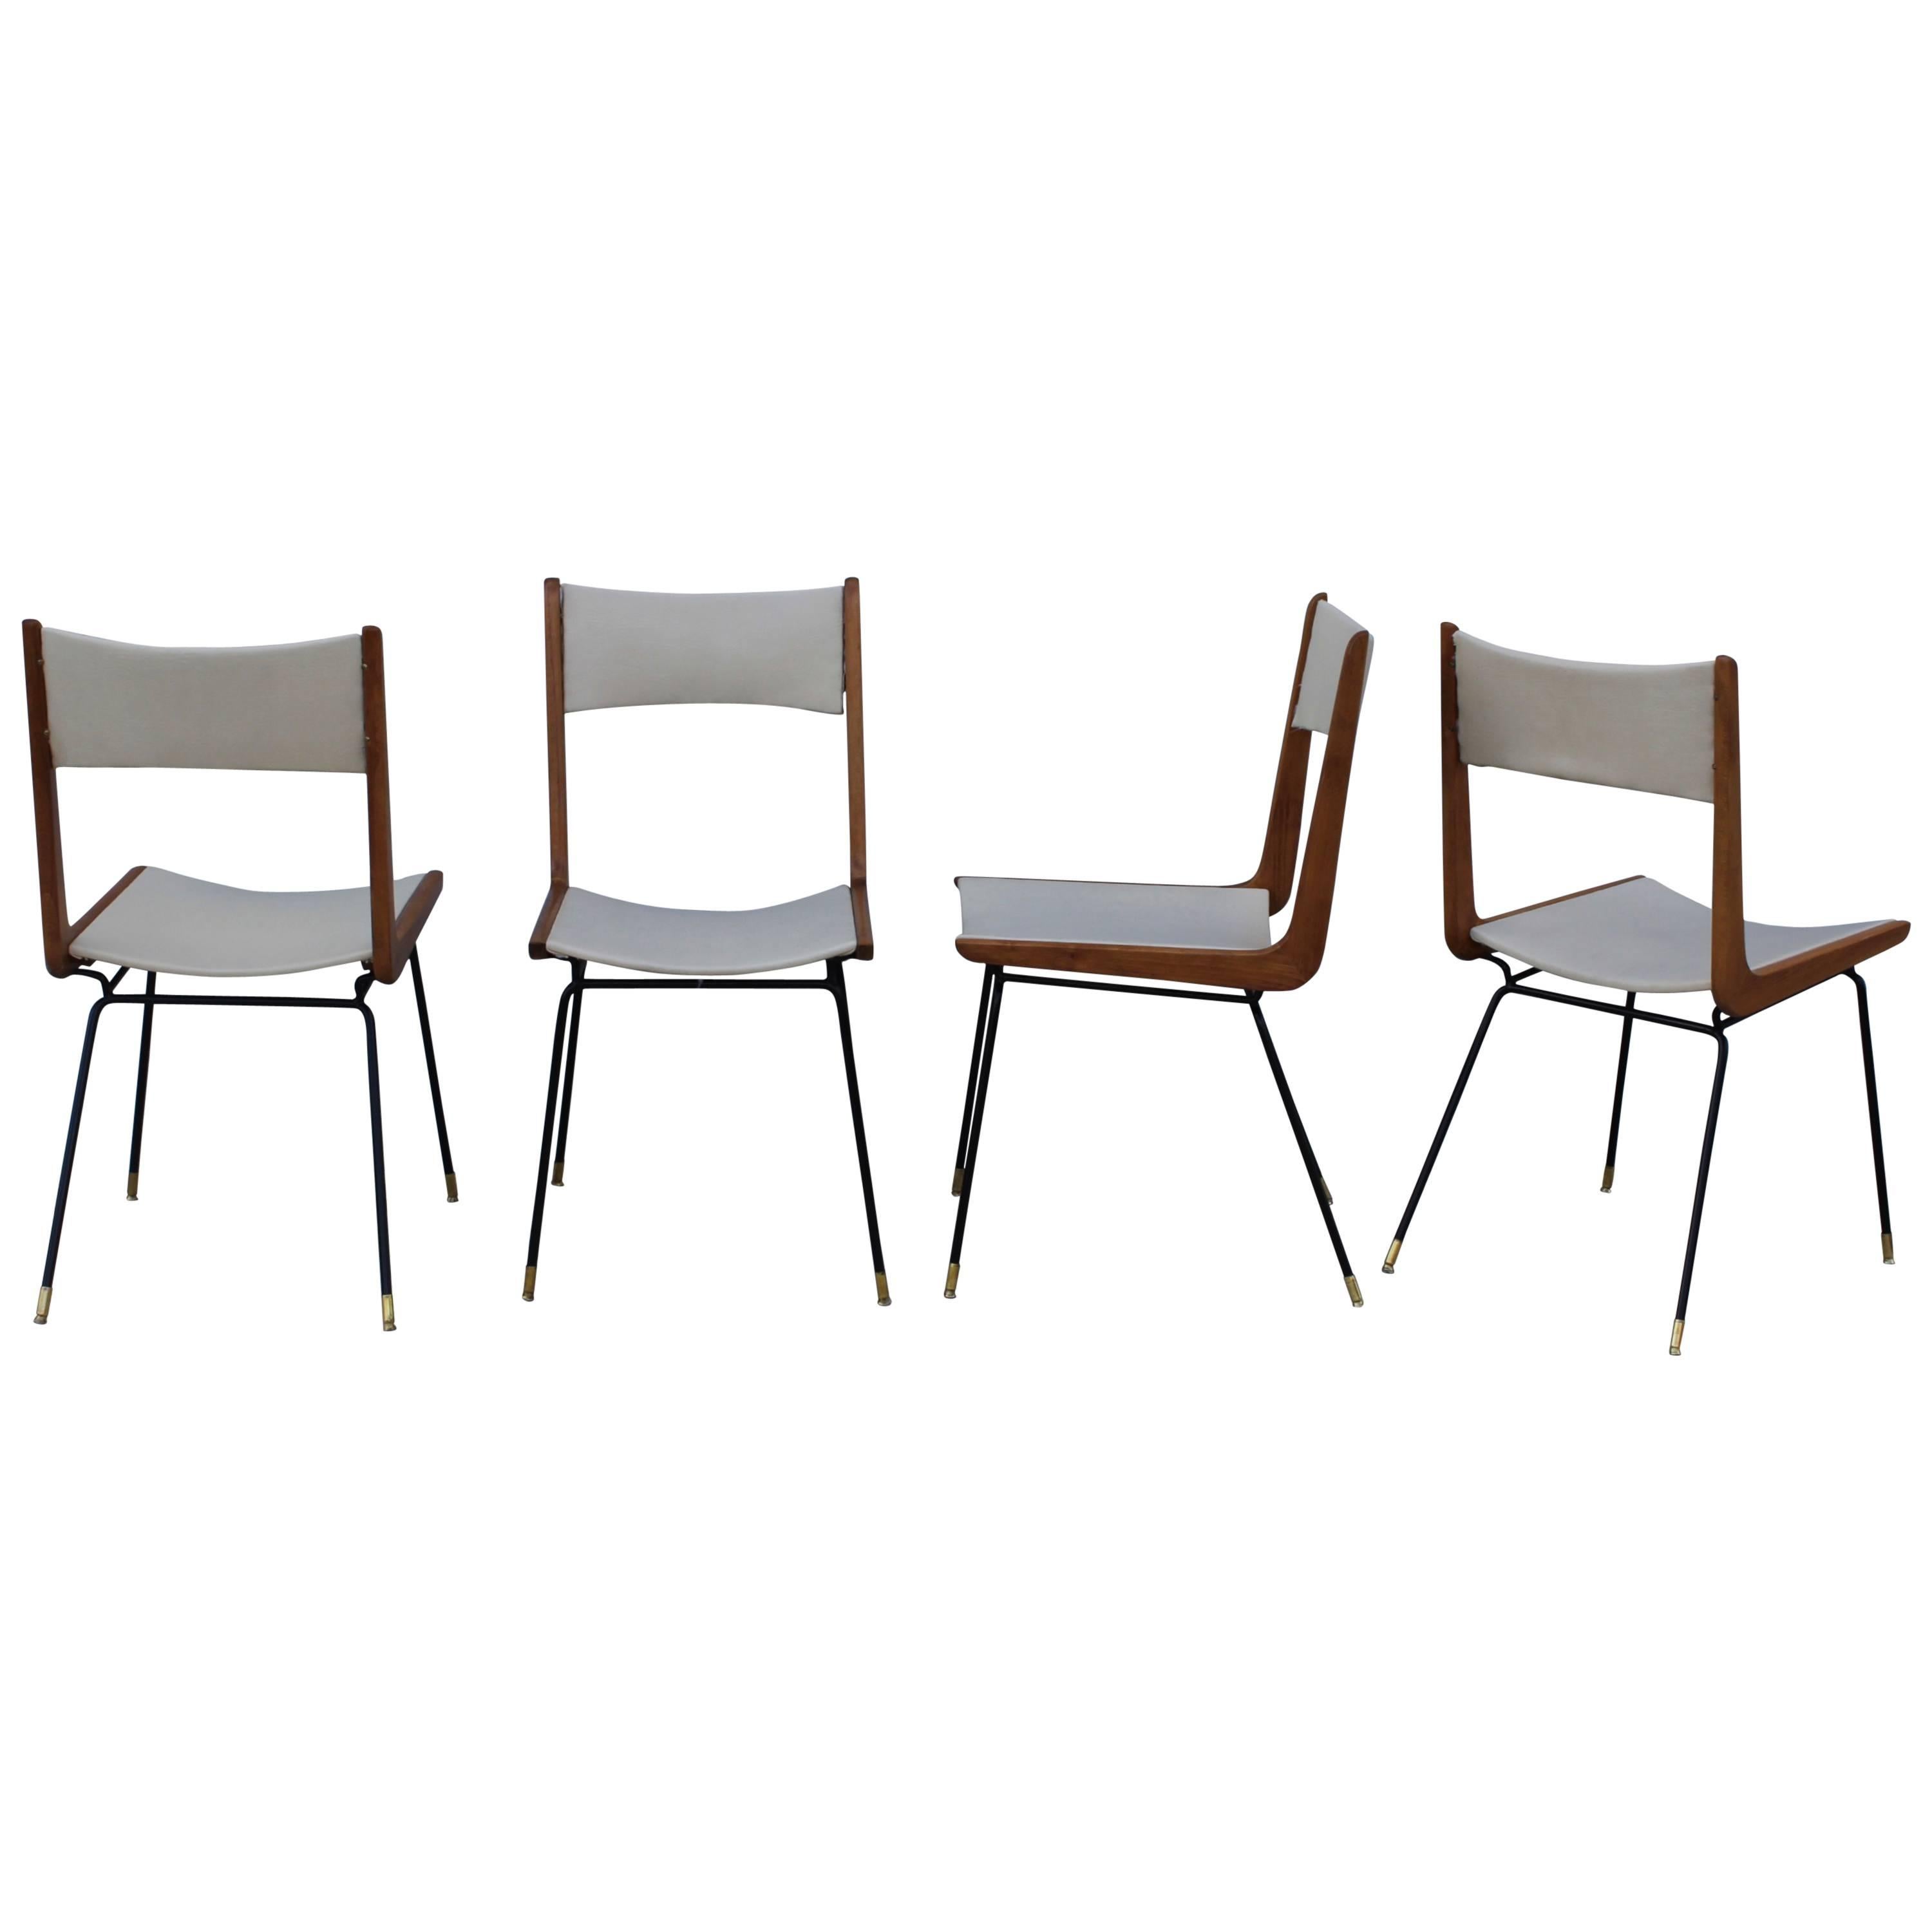 Dining Chairs, style of Carlo di Carli, ca. 1958